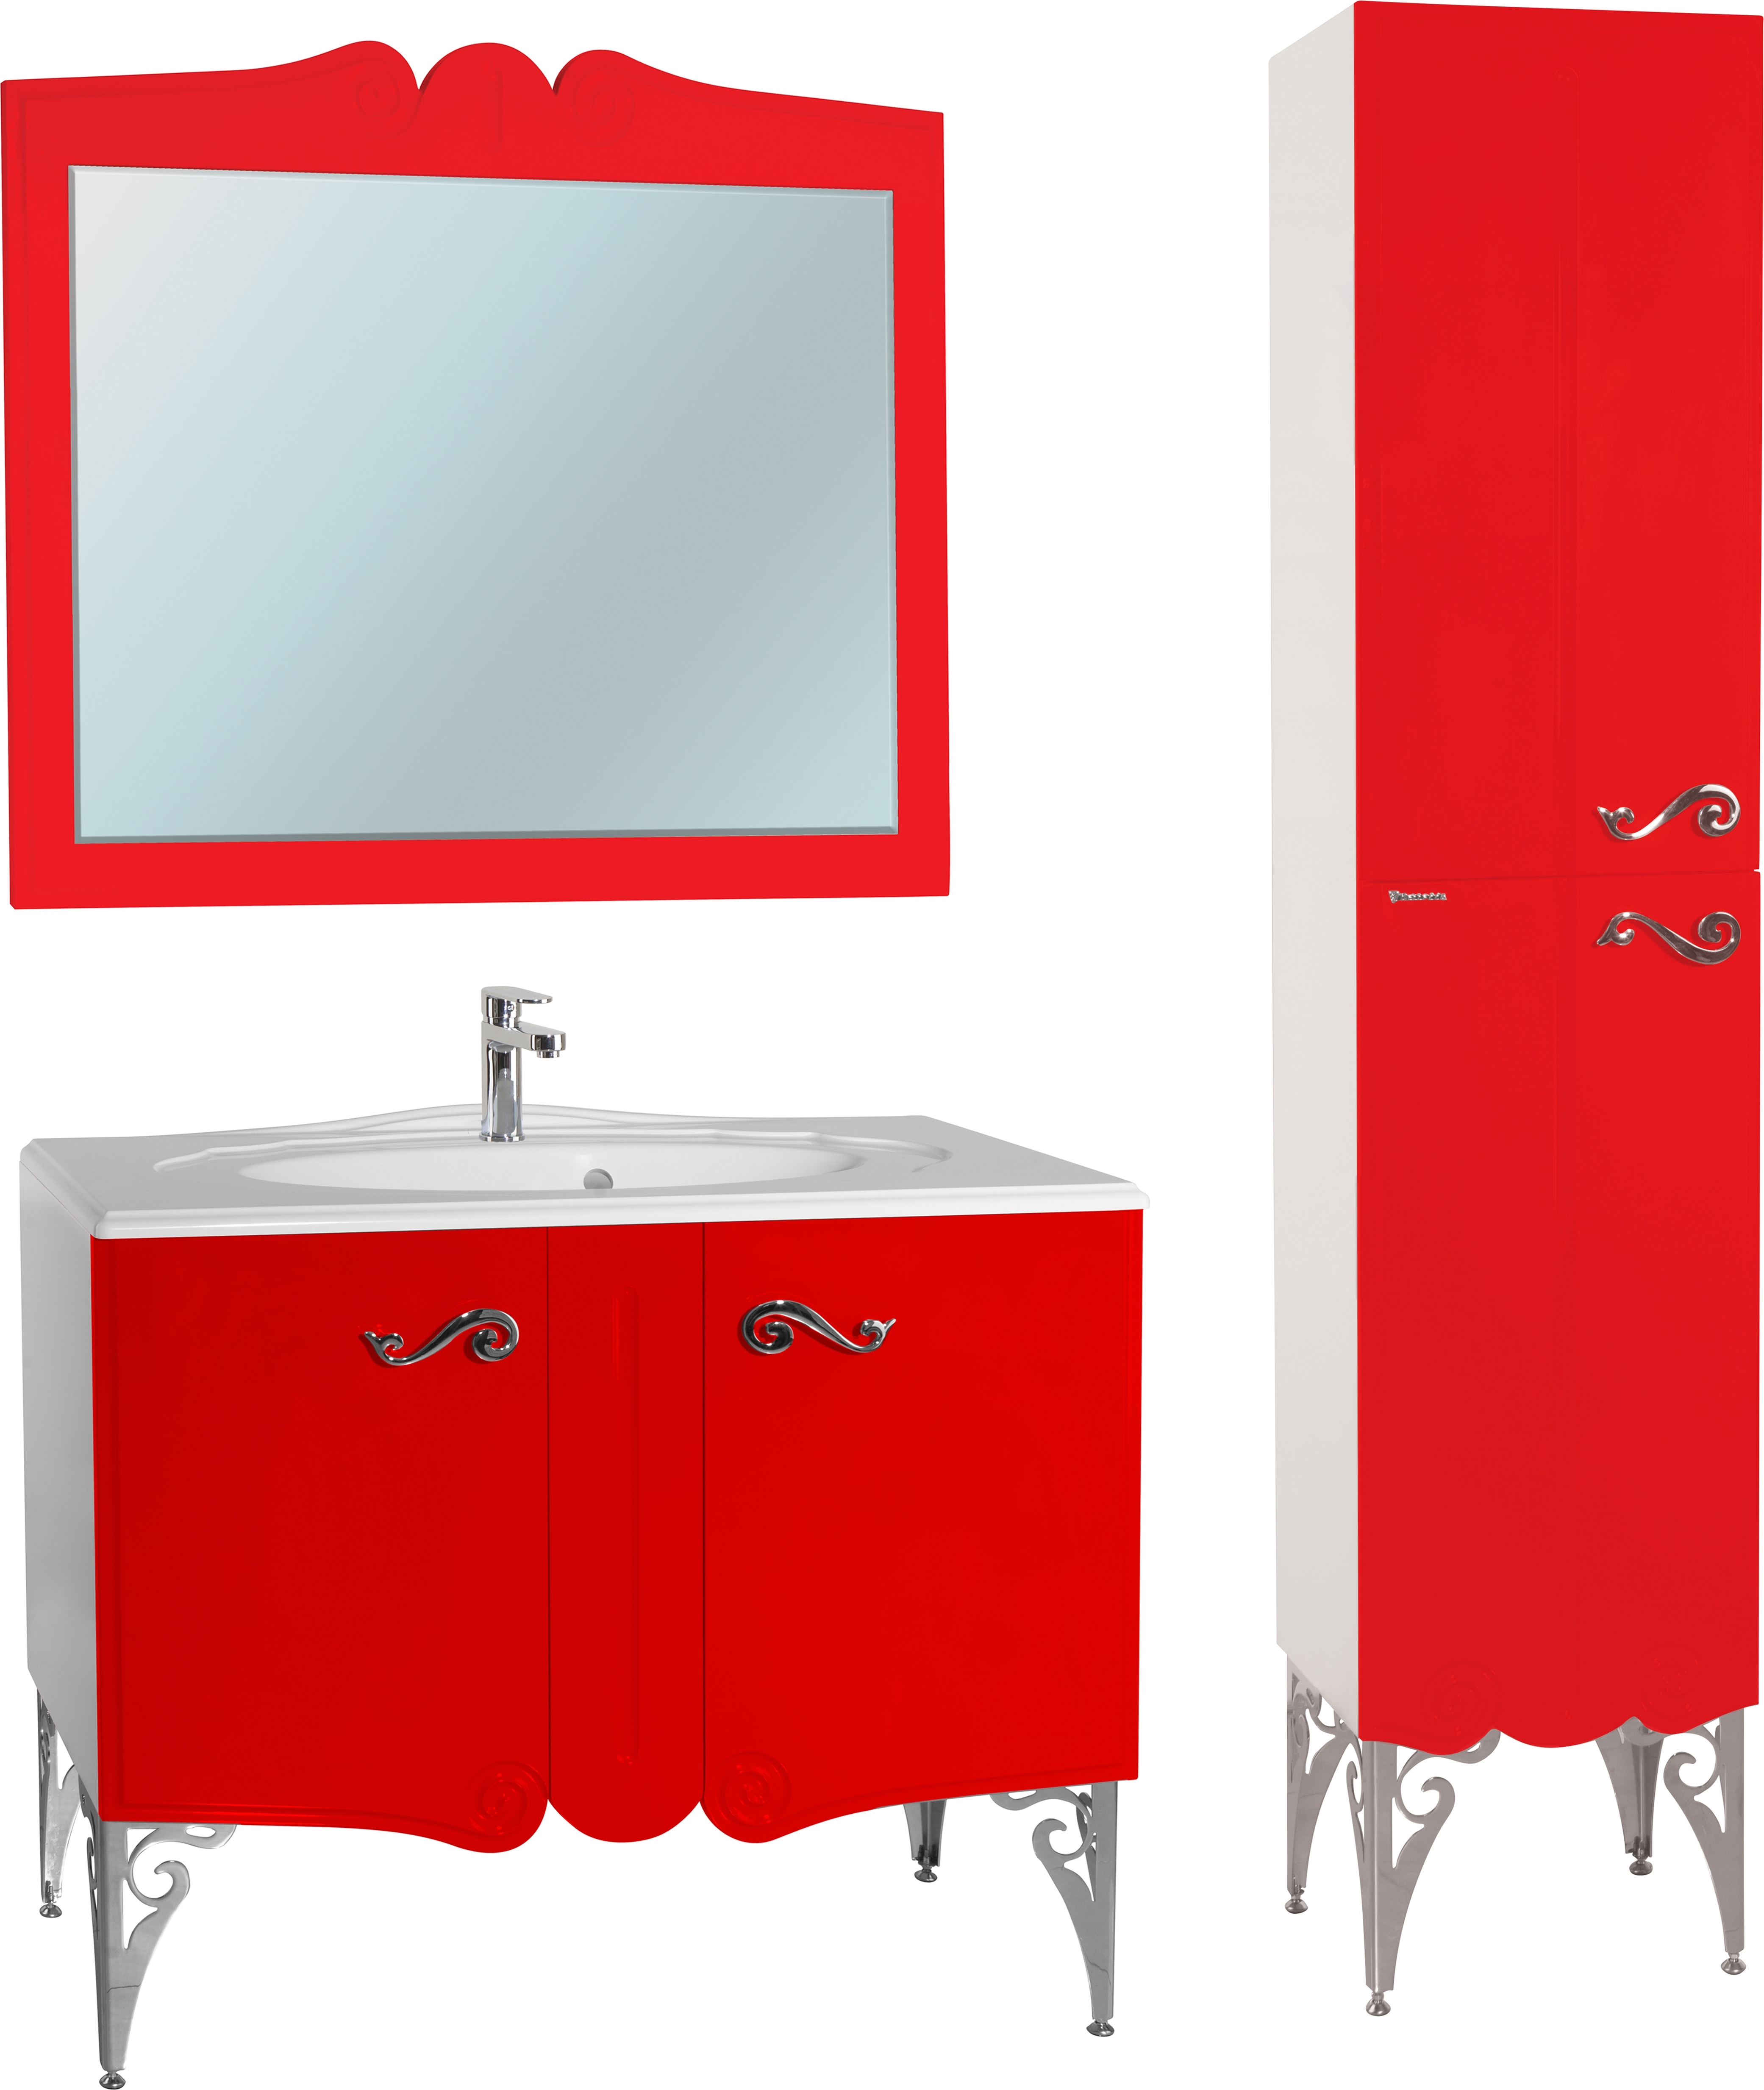 Мебель для ванной Bellezza Эстель 100 красная - 3